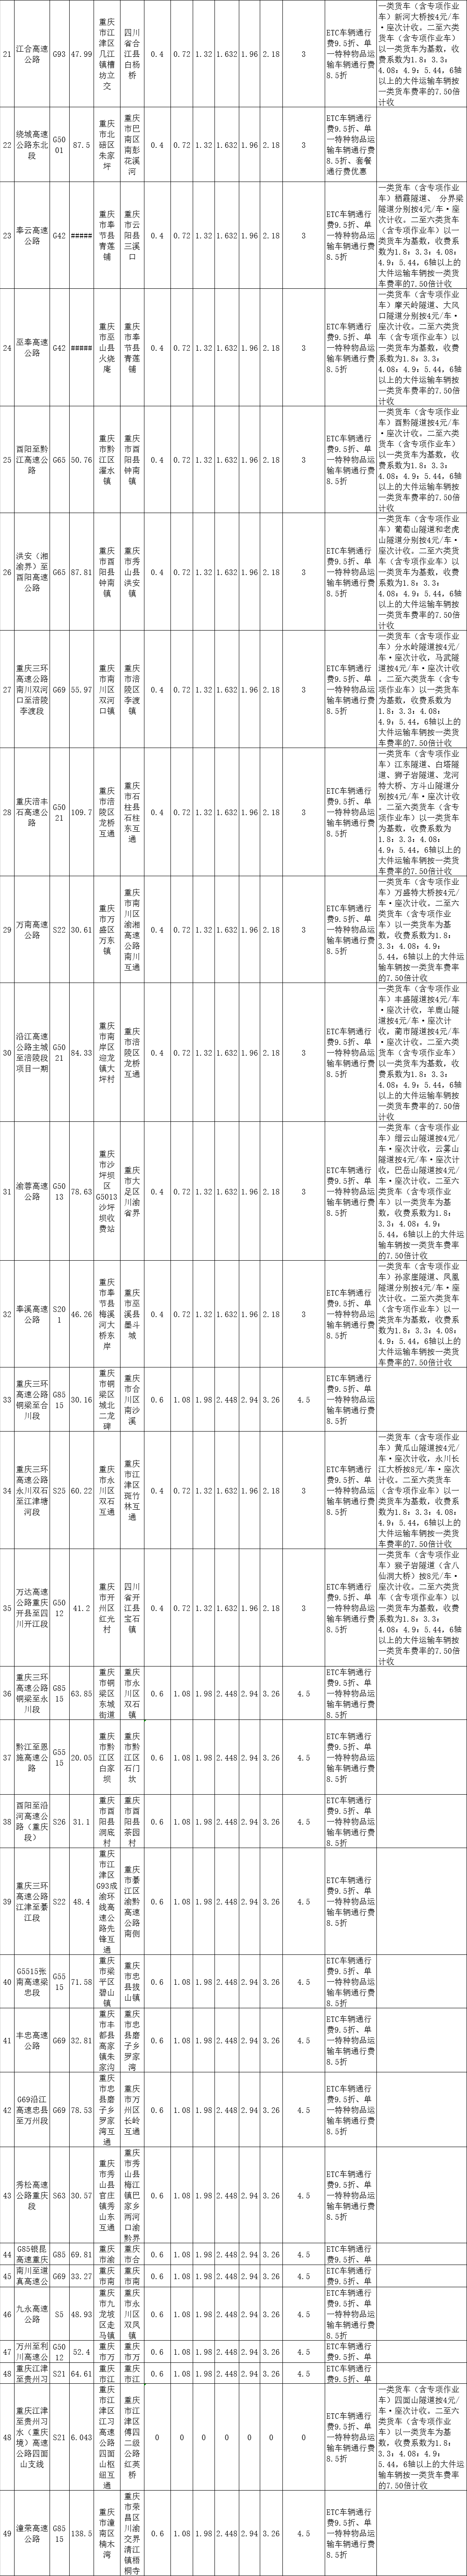 重庆高速收费标准图16